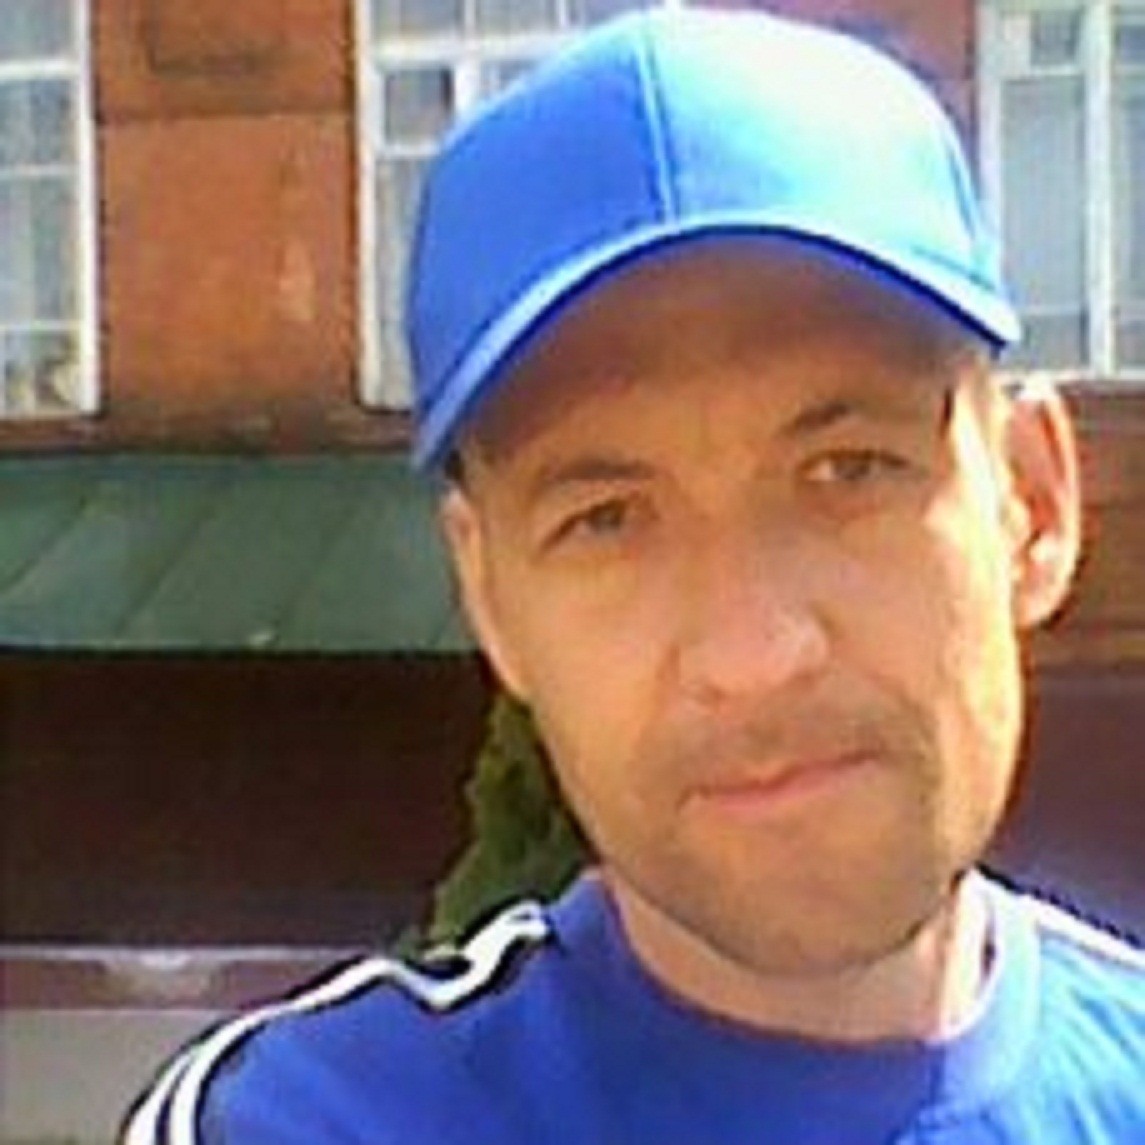 Знакомства Тамбов, фото мужчины Сергей, 43 года, познакомится для флирта, любви и романтики, cерьезных отношений